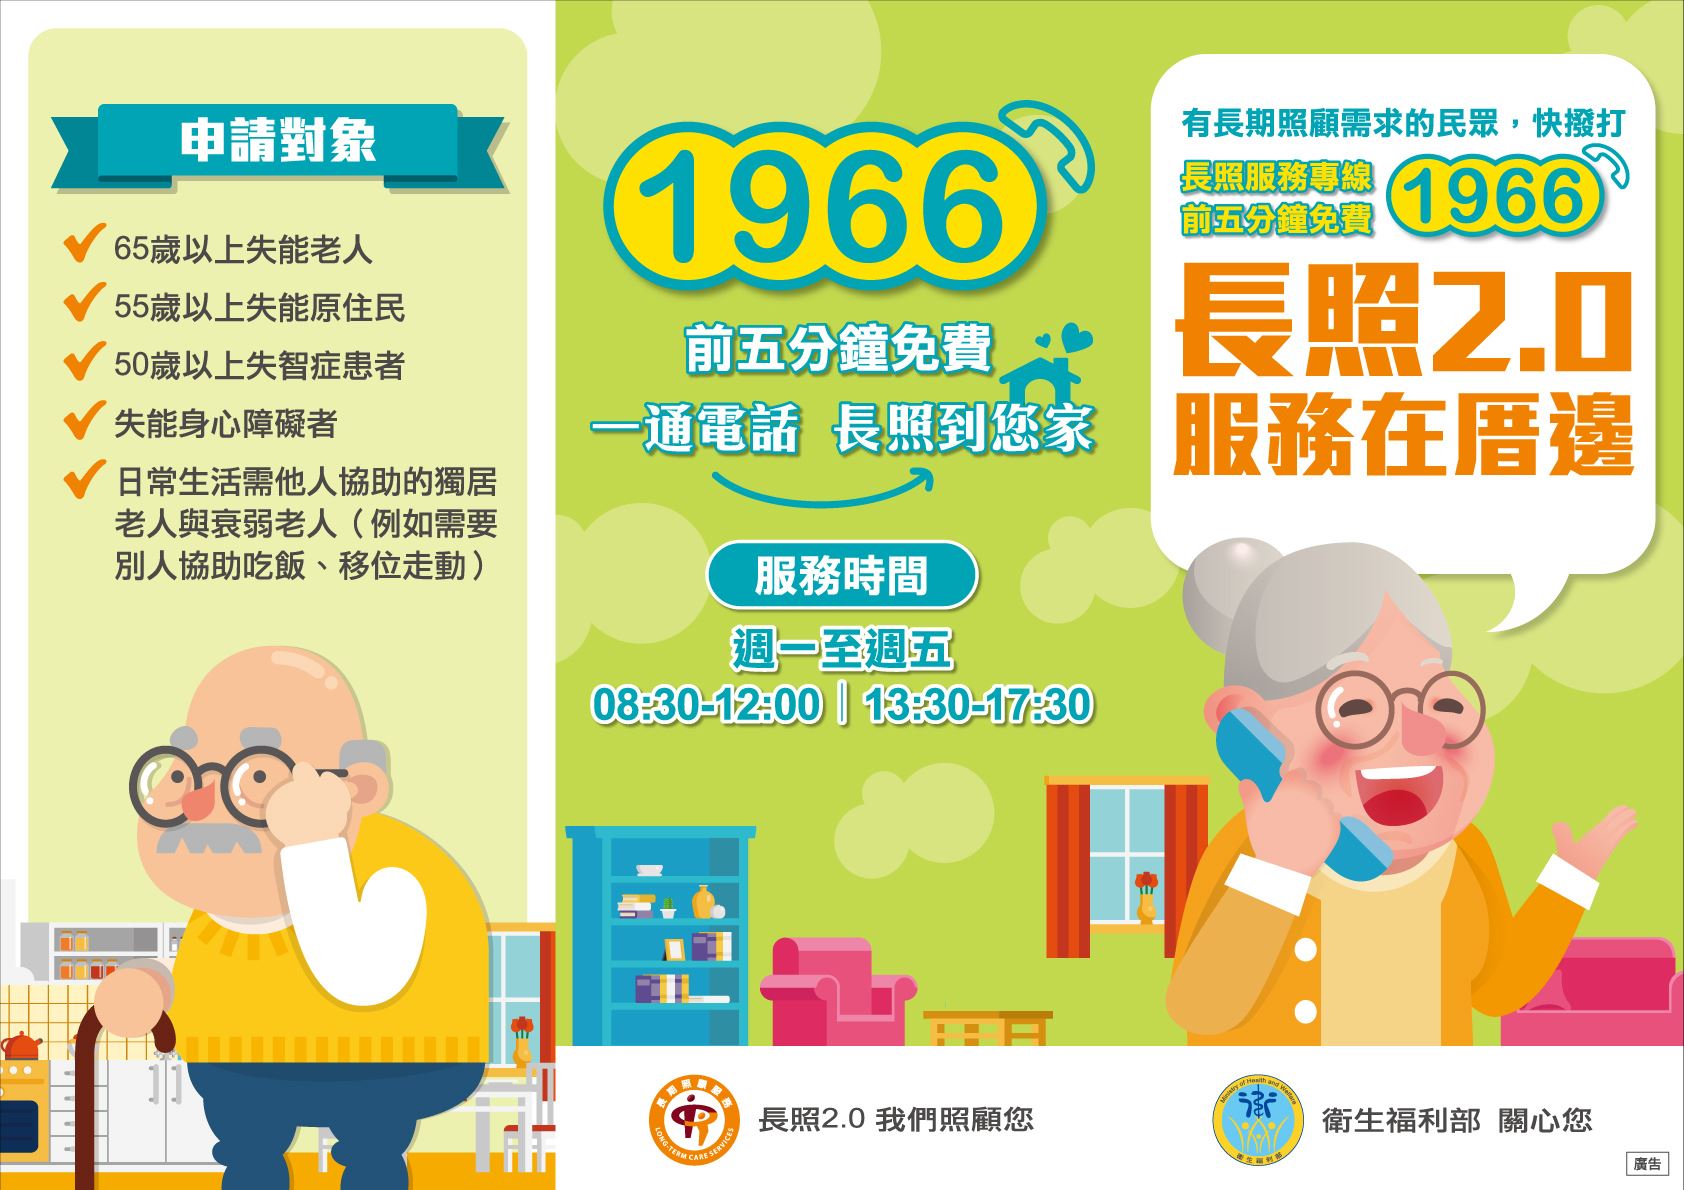 Masyarakat dapat menghubungi hotline 1966 untuk membuat janji terlebih dahulu. Sumber: Pemerintah Kabupaten Pingtung